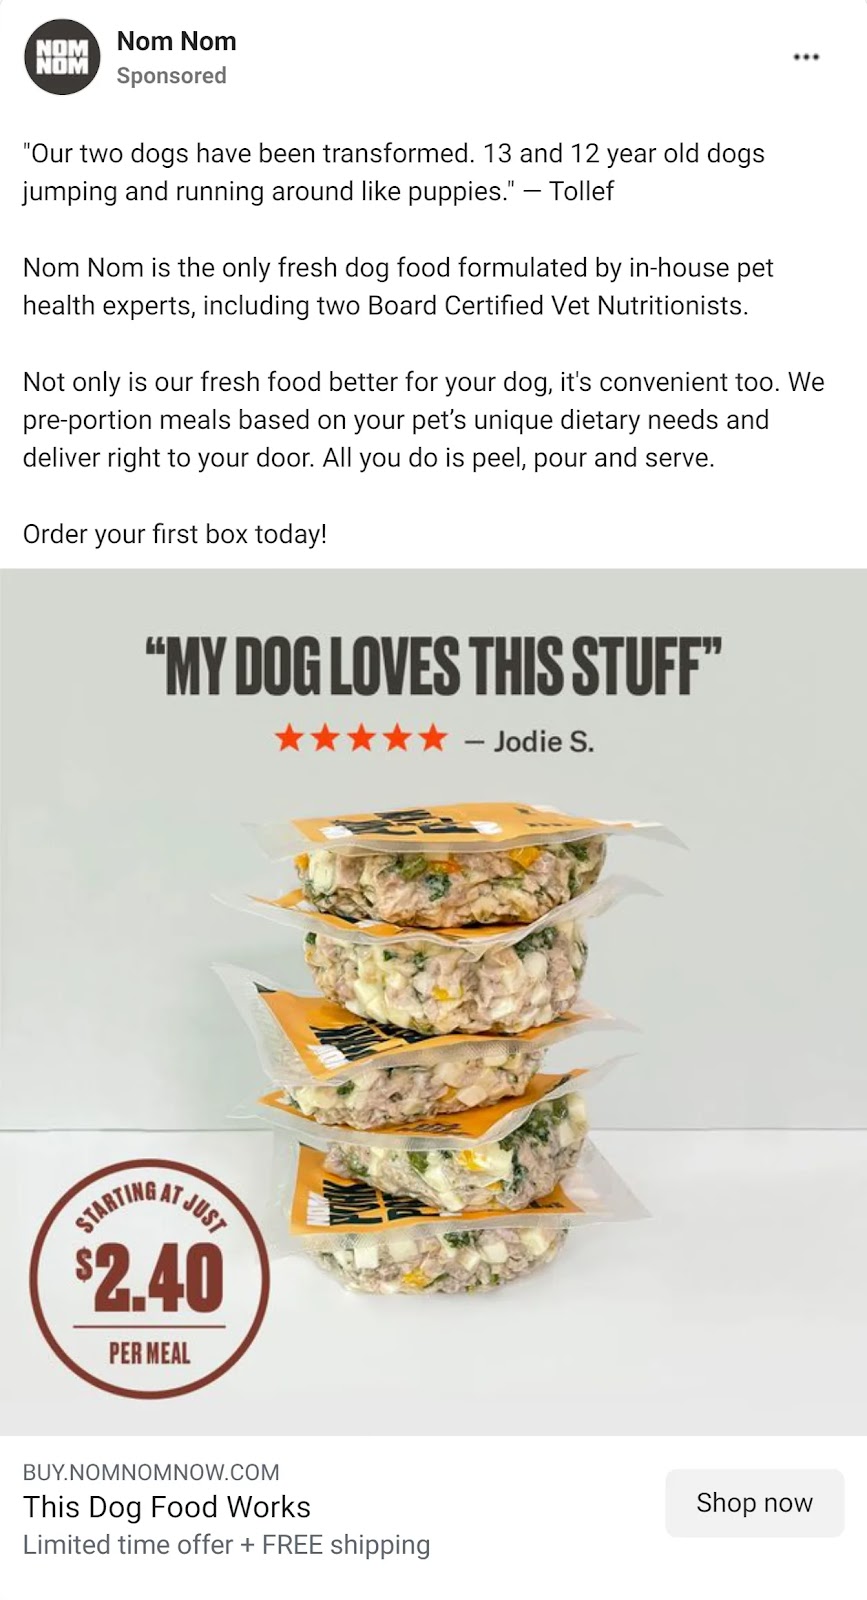 Nom Nom's Facebook ad for premium dog food